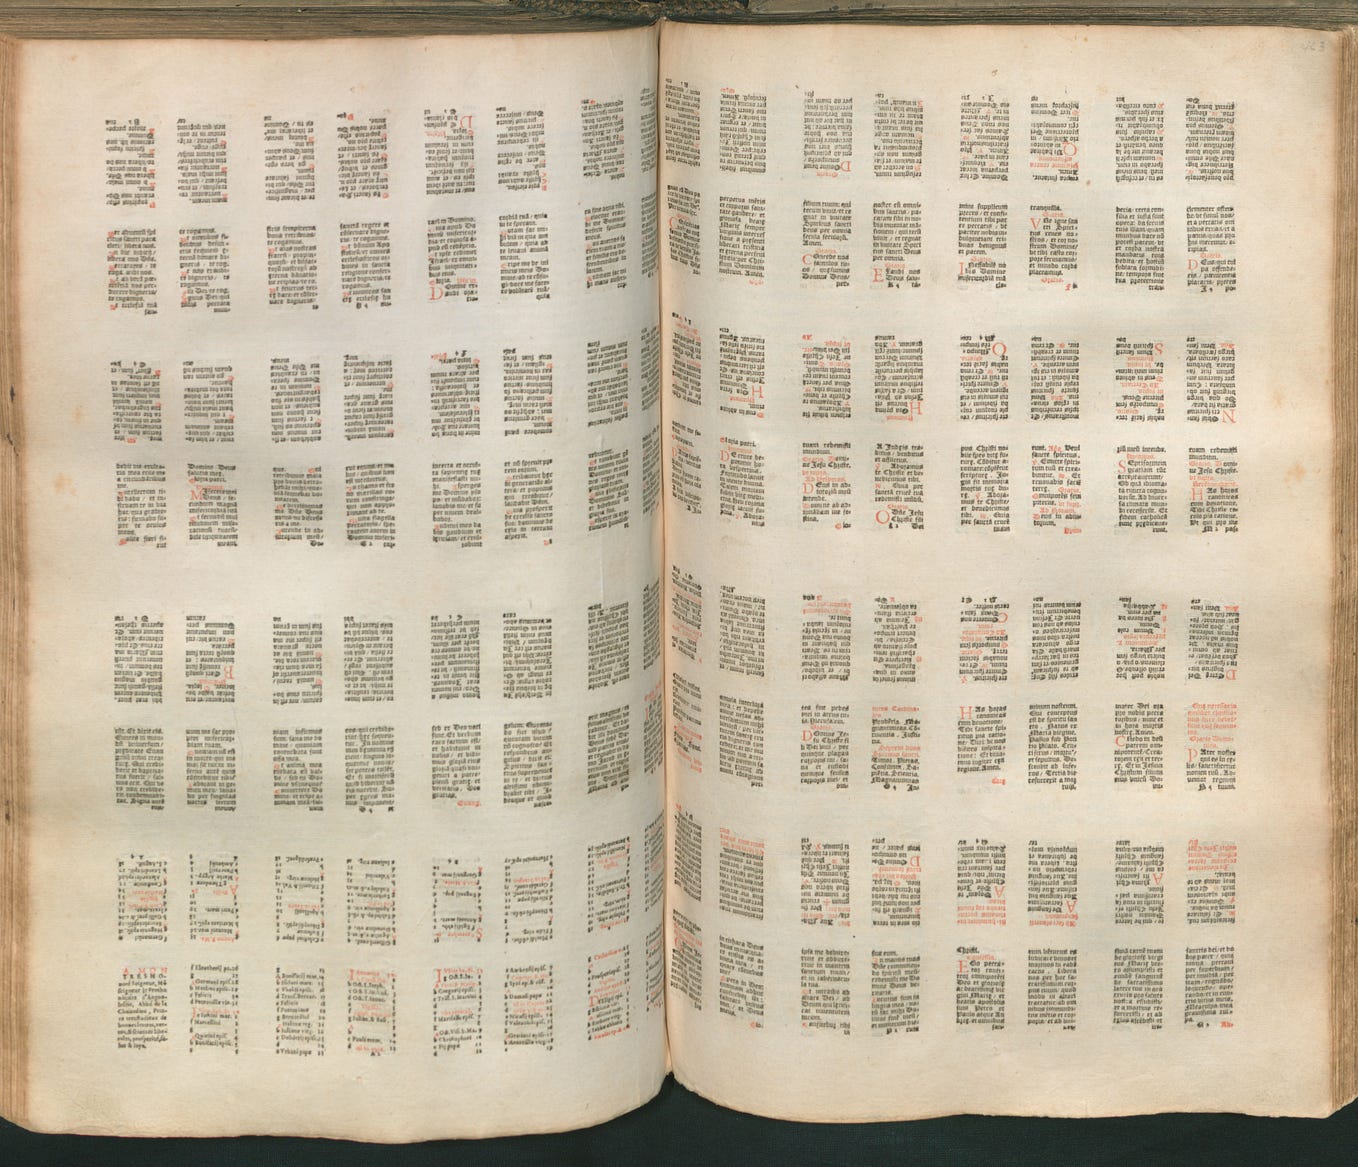 Kale[n]darium, Antuerpiæ, exc. C. Plantinus, 1570, 128vo (MPM Arch. 1230, fol. 462 verso — 463 recto)